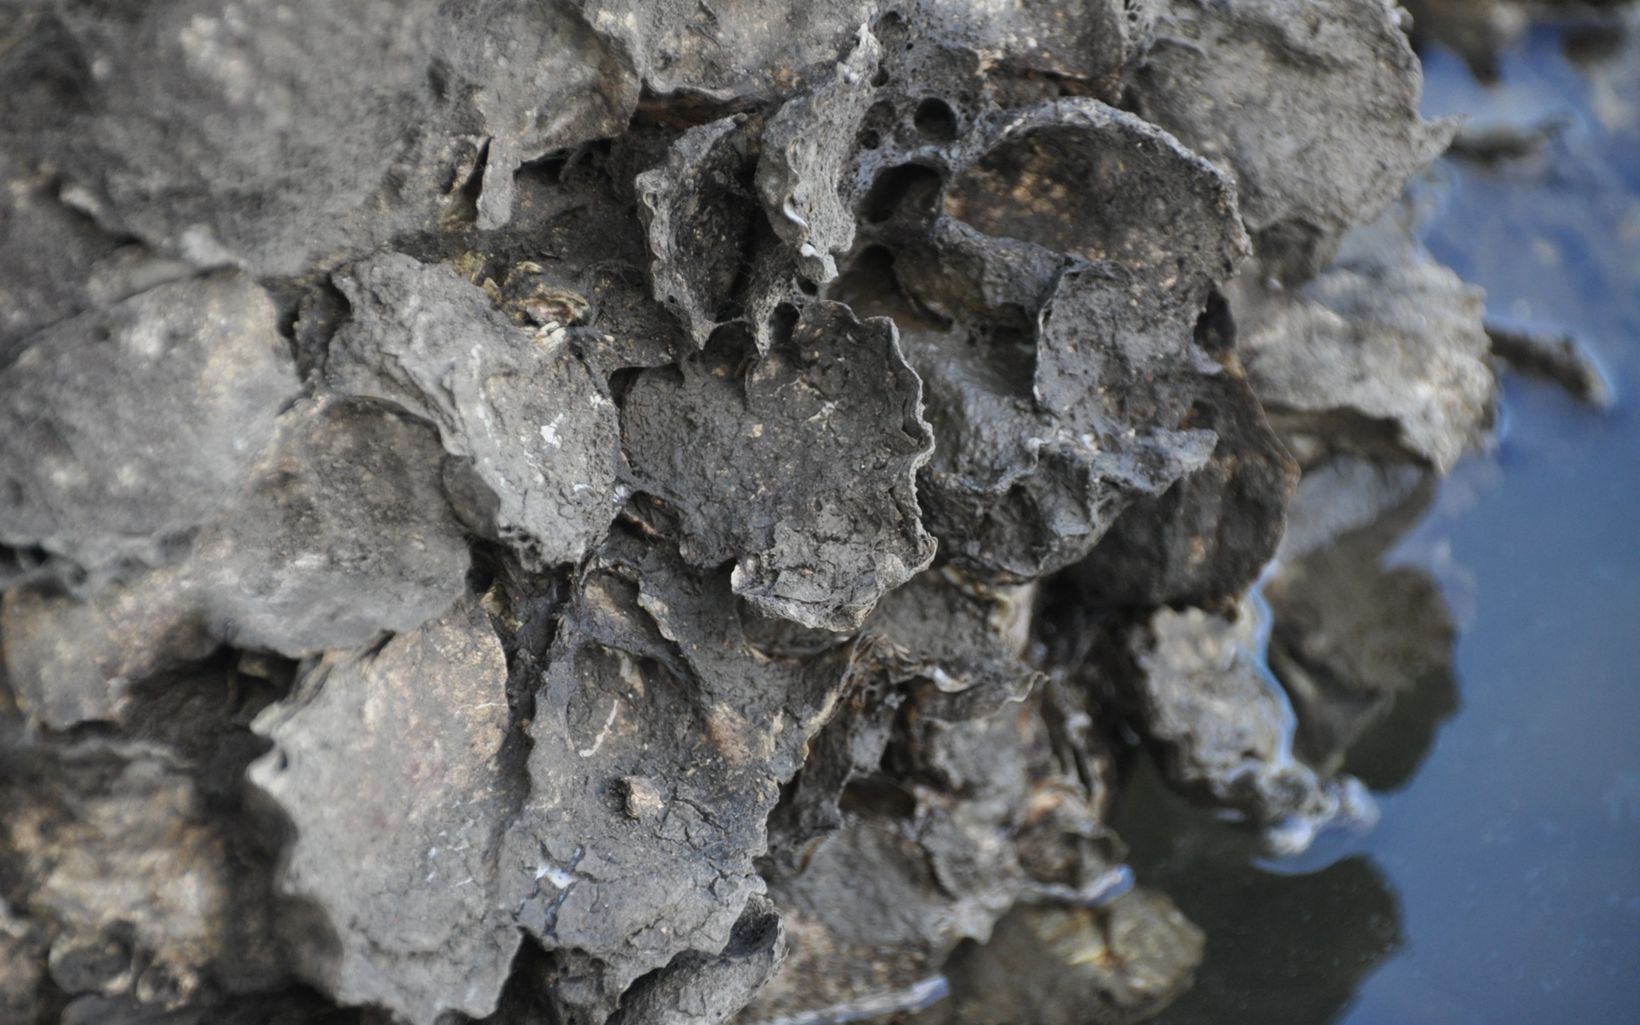 Rock oysters found at Noosa © Craig Bohm / TNC